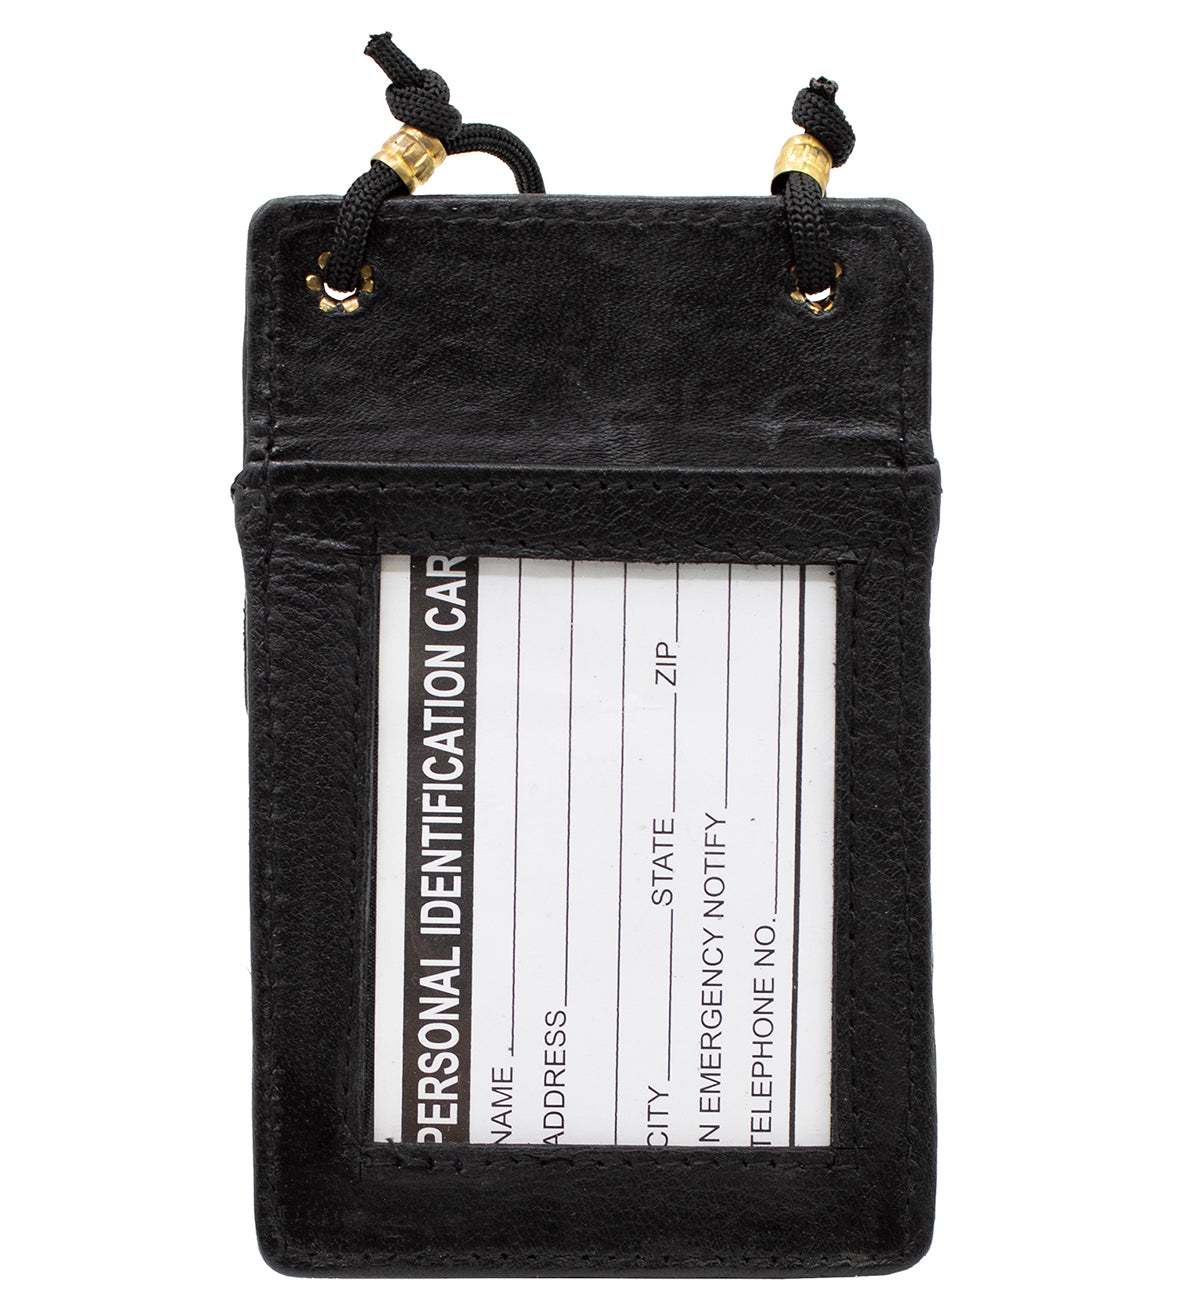 Black Genuine Leather ID Card Holder Neck Strap Travel Wallet String Bag Lanyard